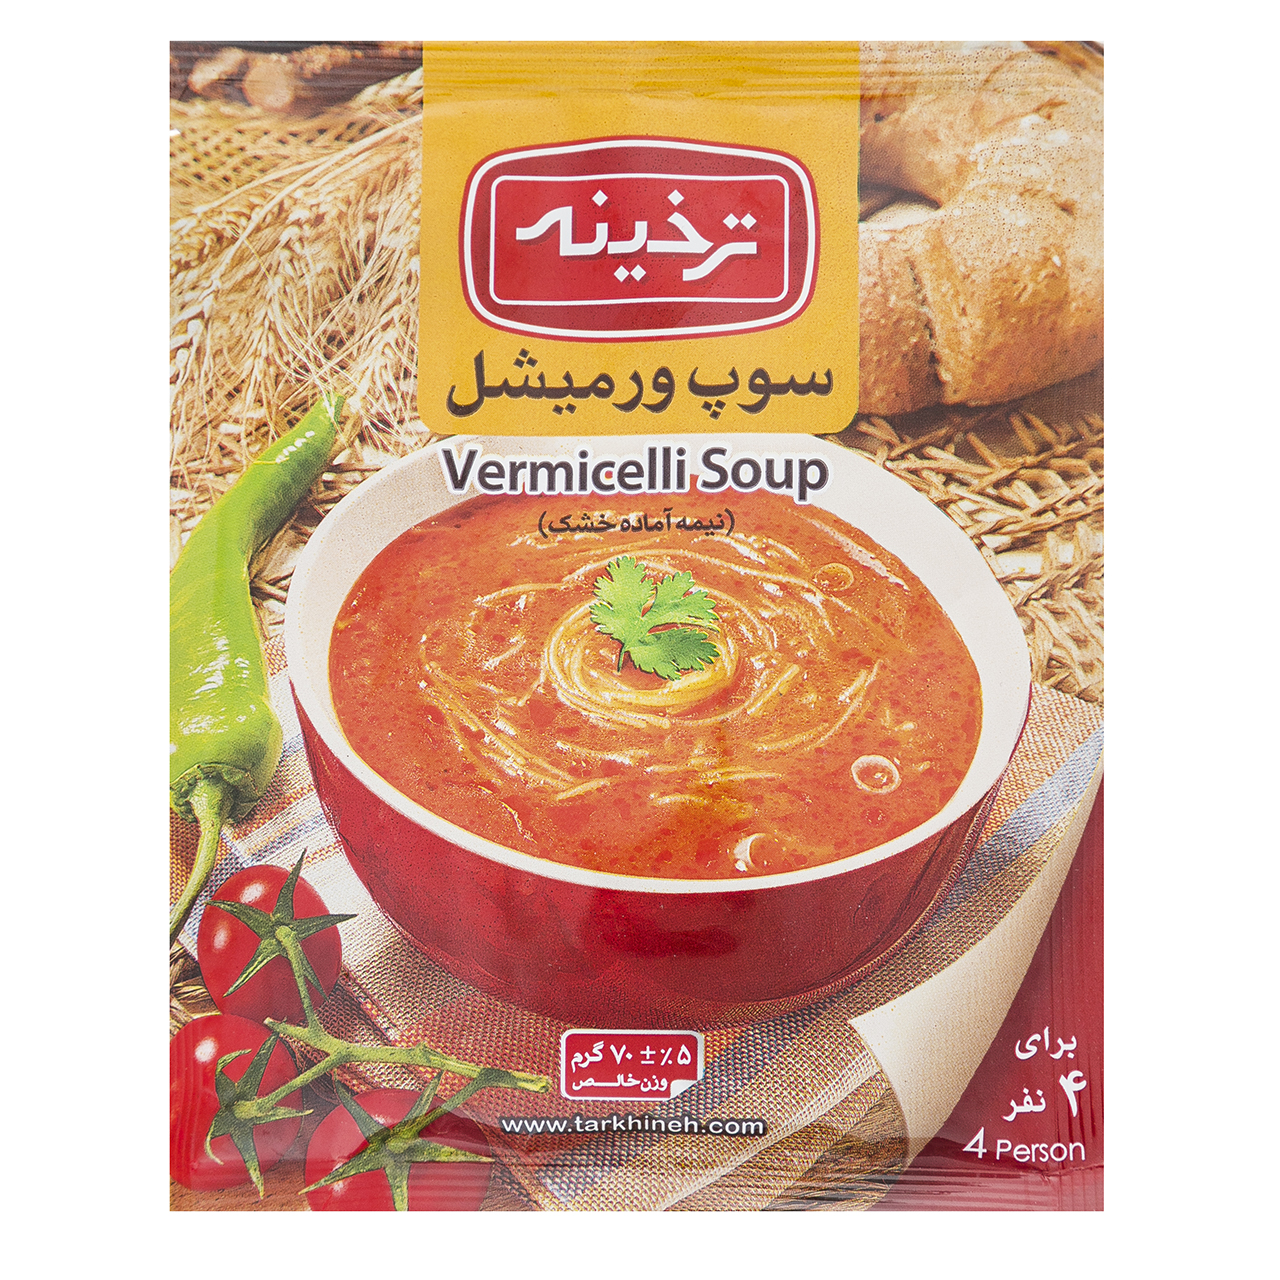 سوپ ورمیشل ترخینه مقدار 70 گرم